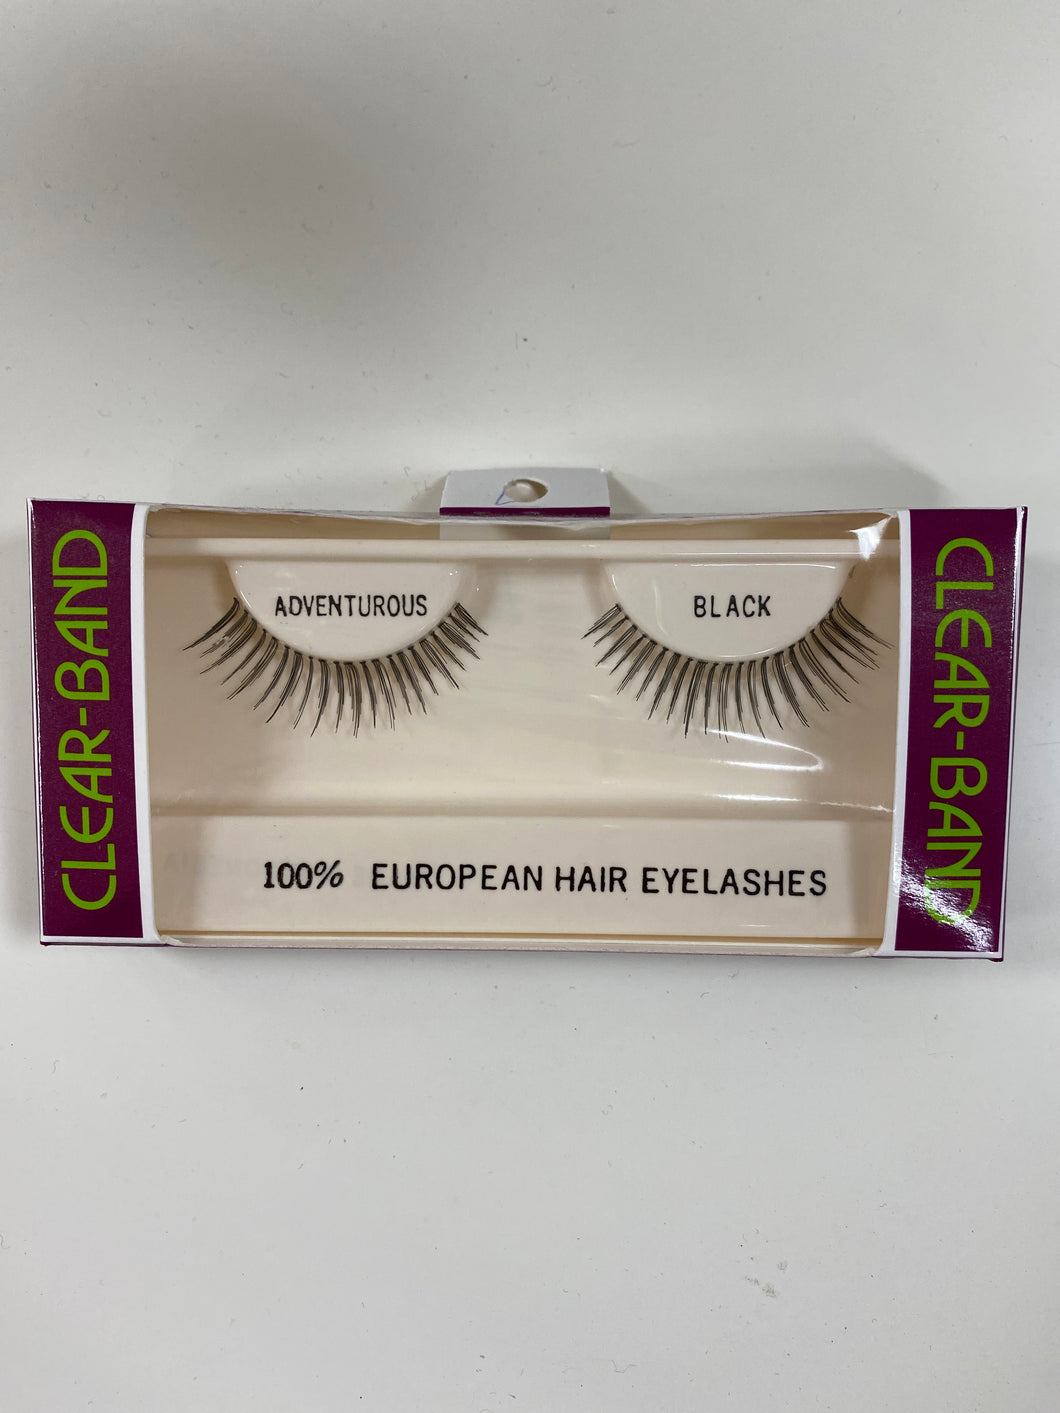 Beautee Sense Clear-band 100% European Hair Eyelashes - Adventurous